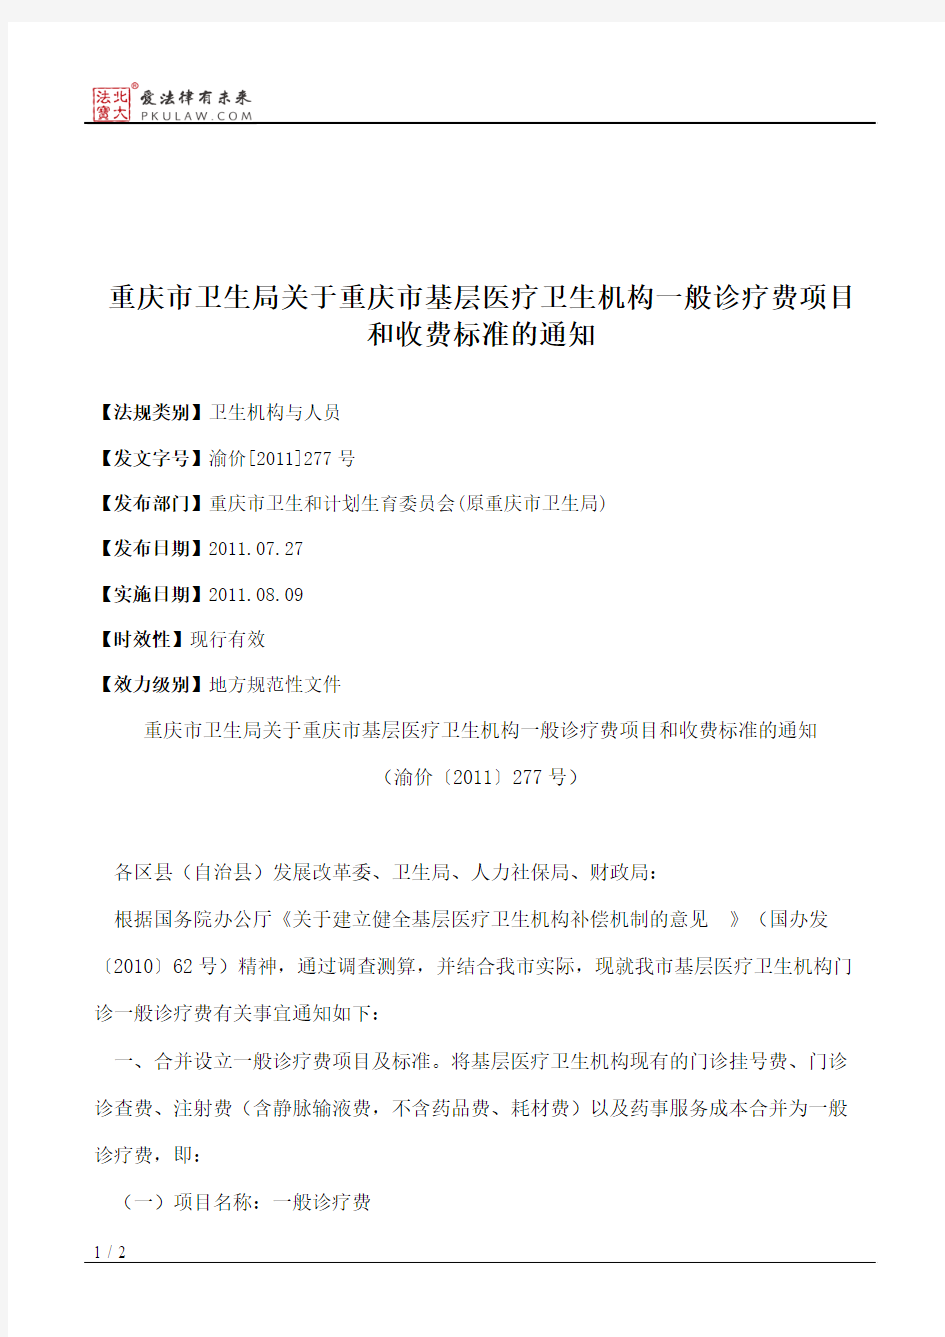 重庆市卫生局关于重庆市基层医疗卫生机构一般诊疗费项目和收费标